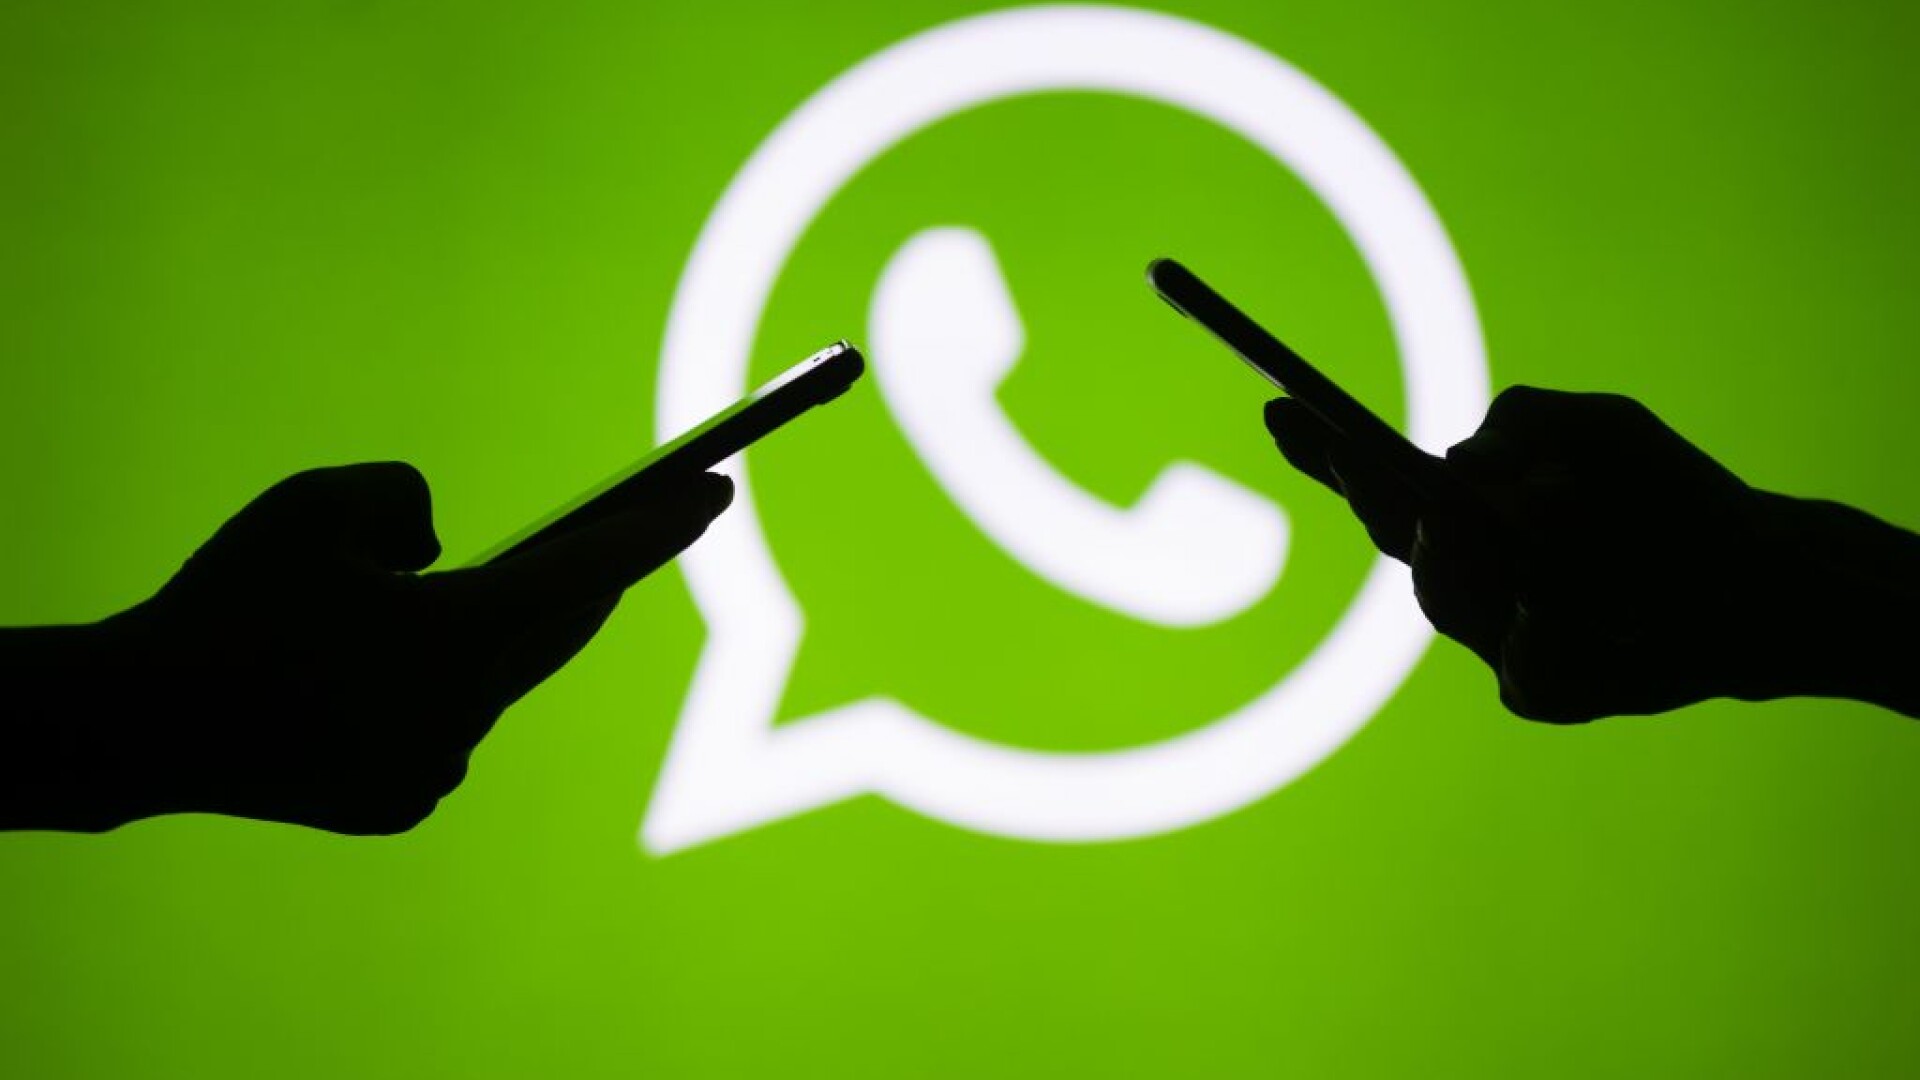 Plângere la Comisia Europeană împotriva WhatsApp: ”Își bombardează utilizatorii cu mesaje agresive”